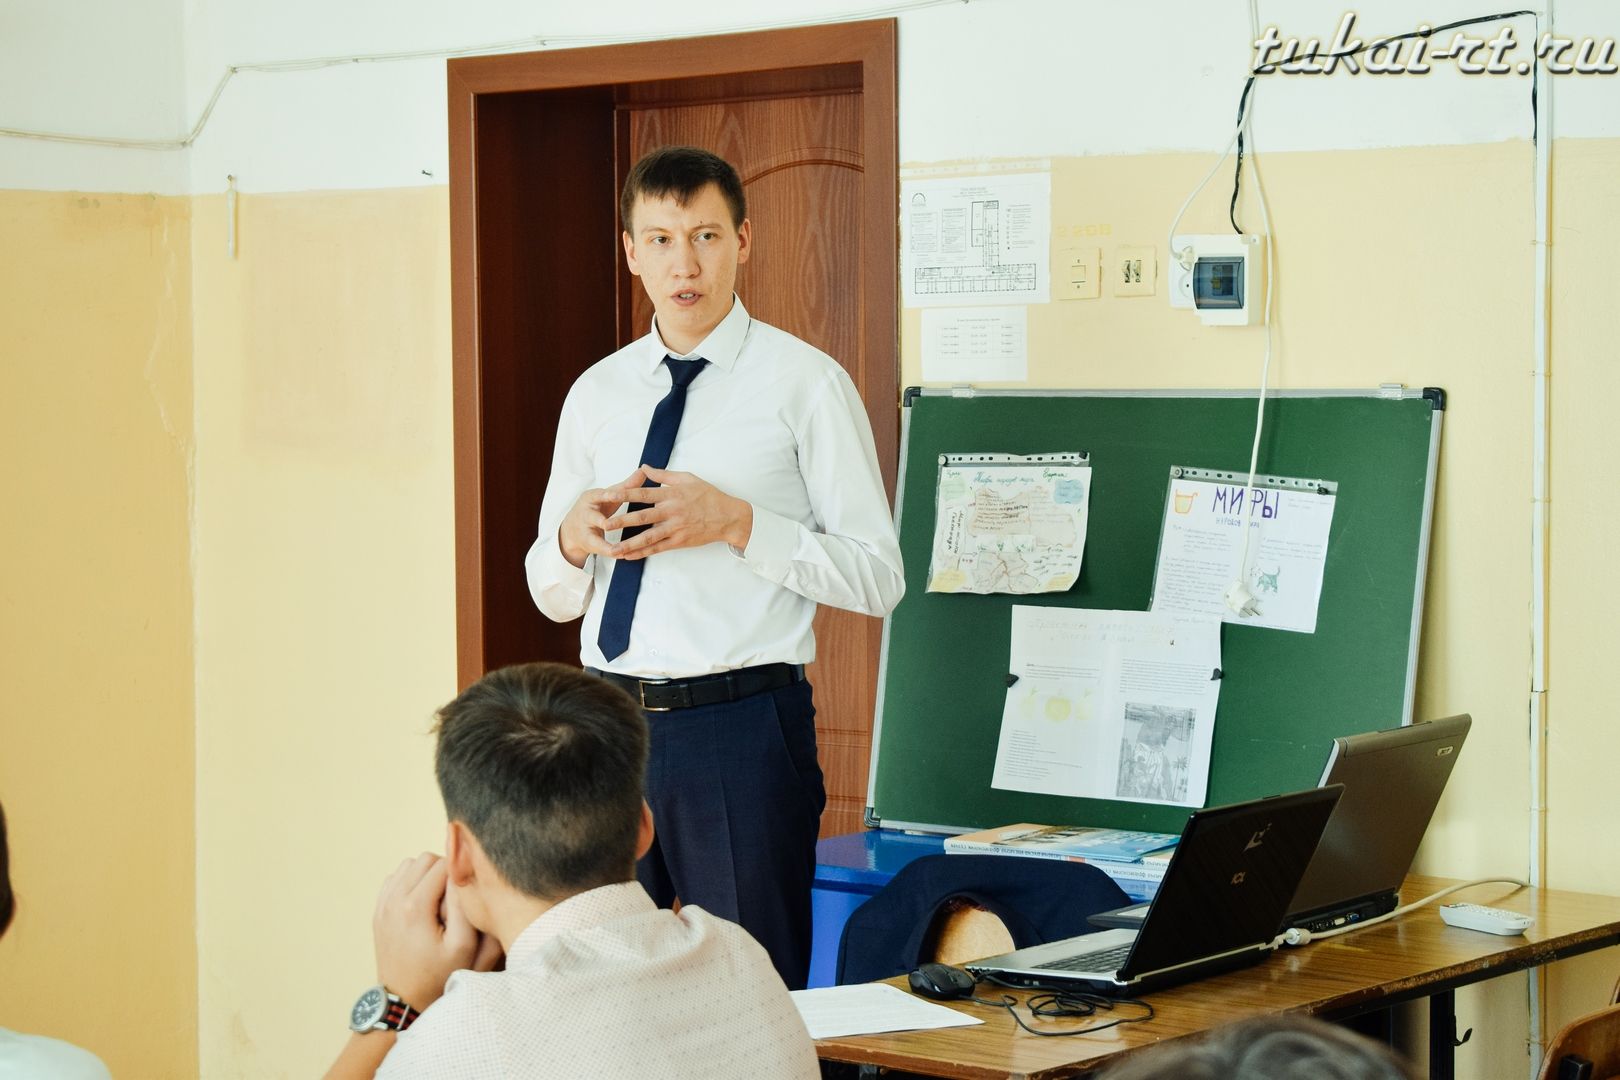 Пенсионный урок прошел в Биклянской школе Тукаевского района ФОТО